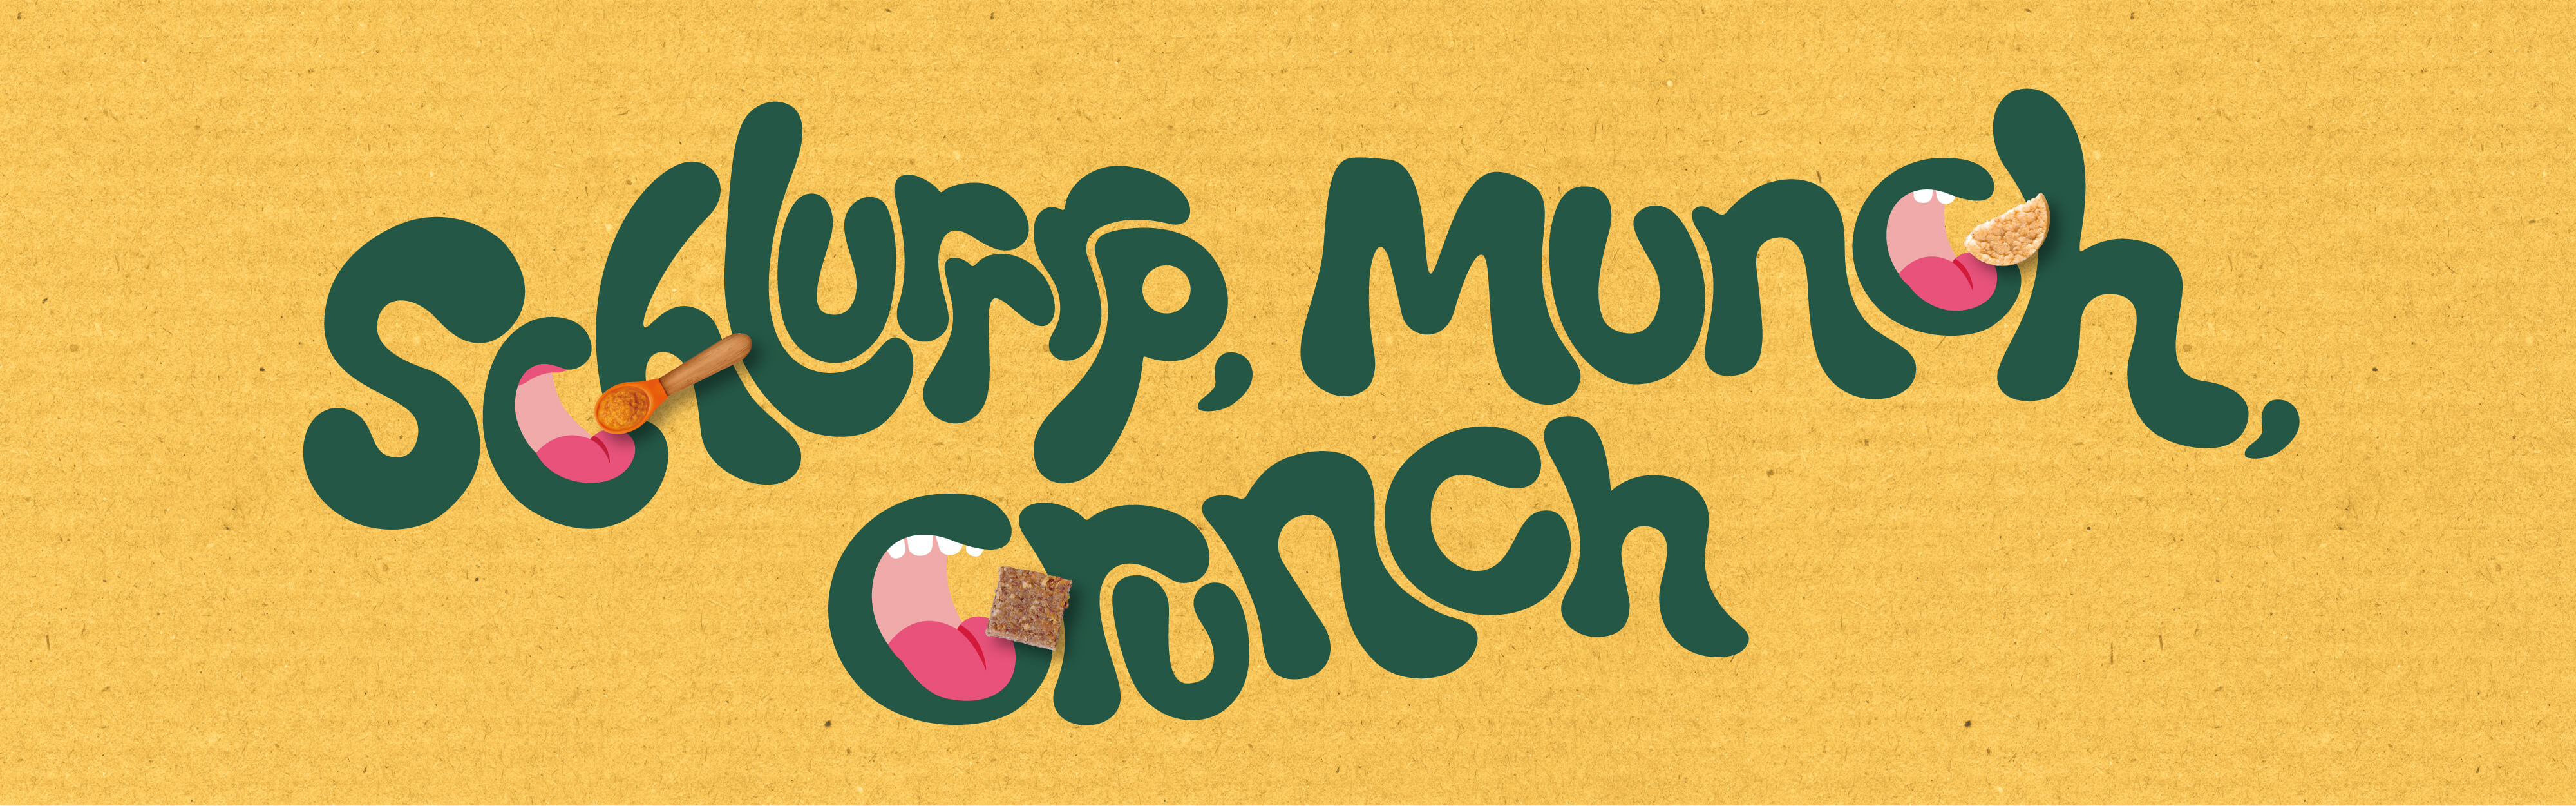 Organix green text that says "schlurrrp, munch, crunch" on an orange background